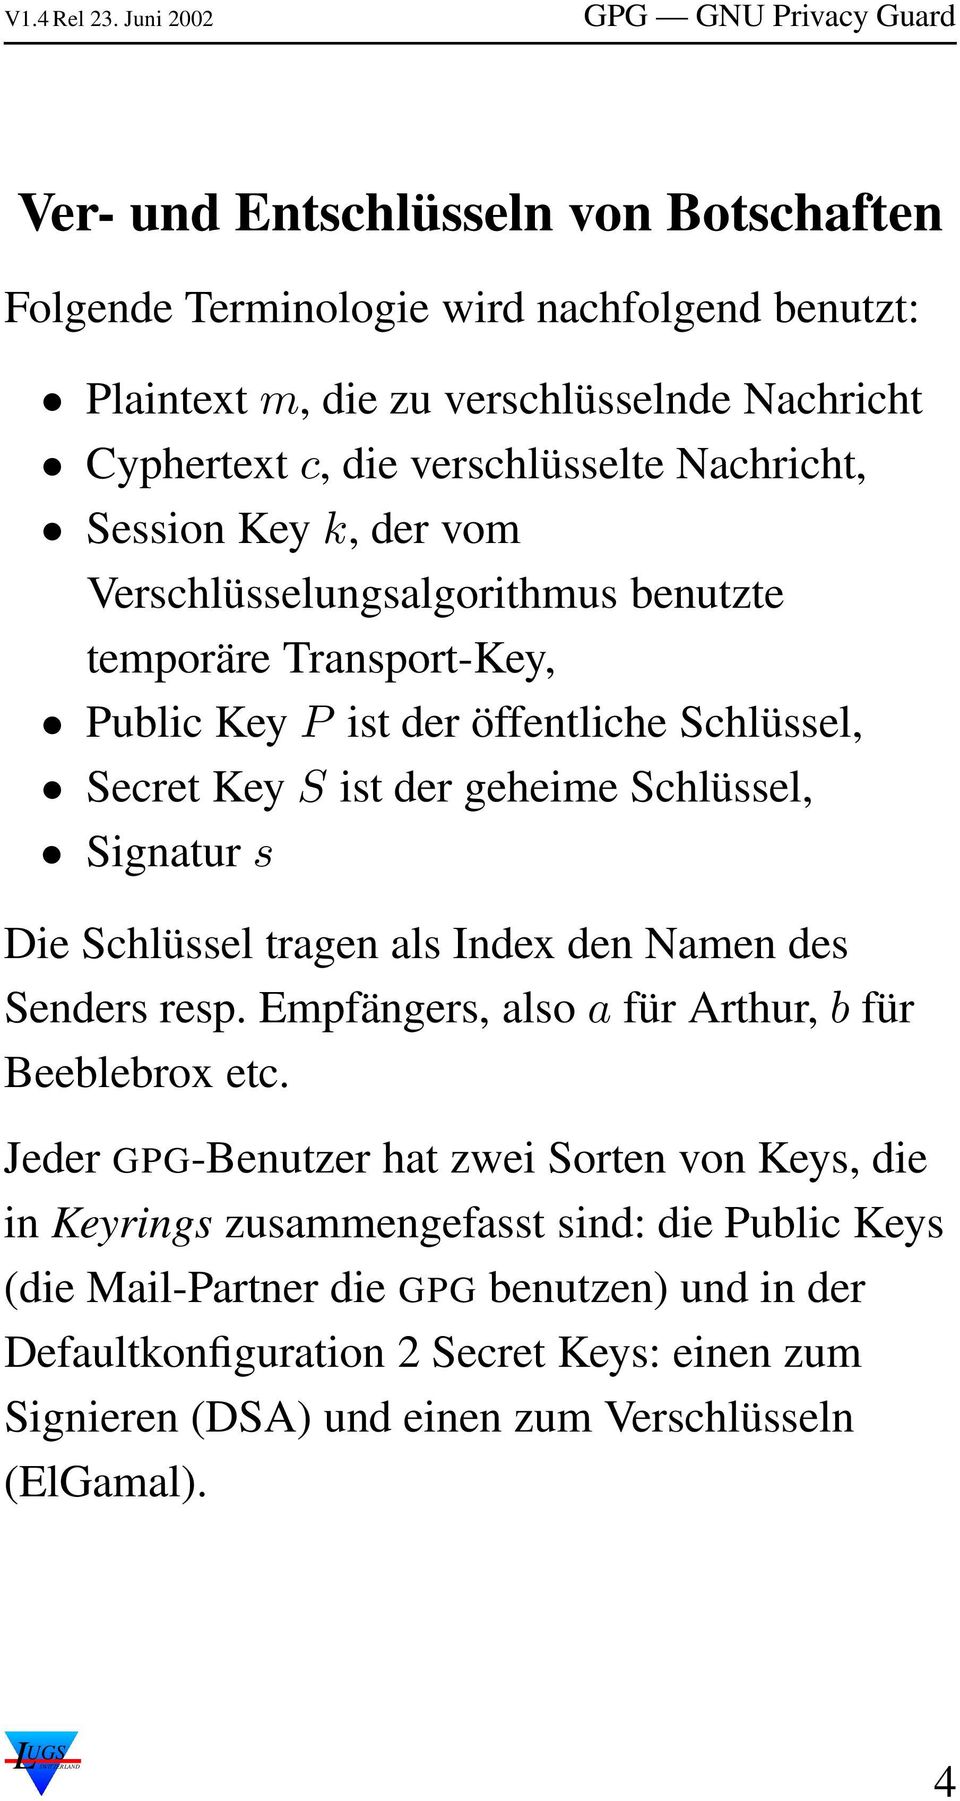 Die Schlüssel tragen als Index den Namen des Senders resp. Empfängers, also a für Arthur, b für Beeblebrox etc.